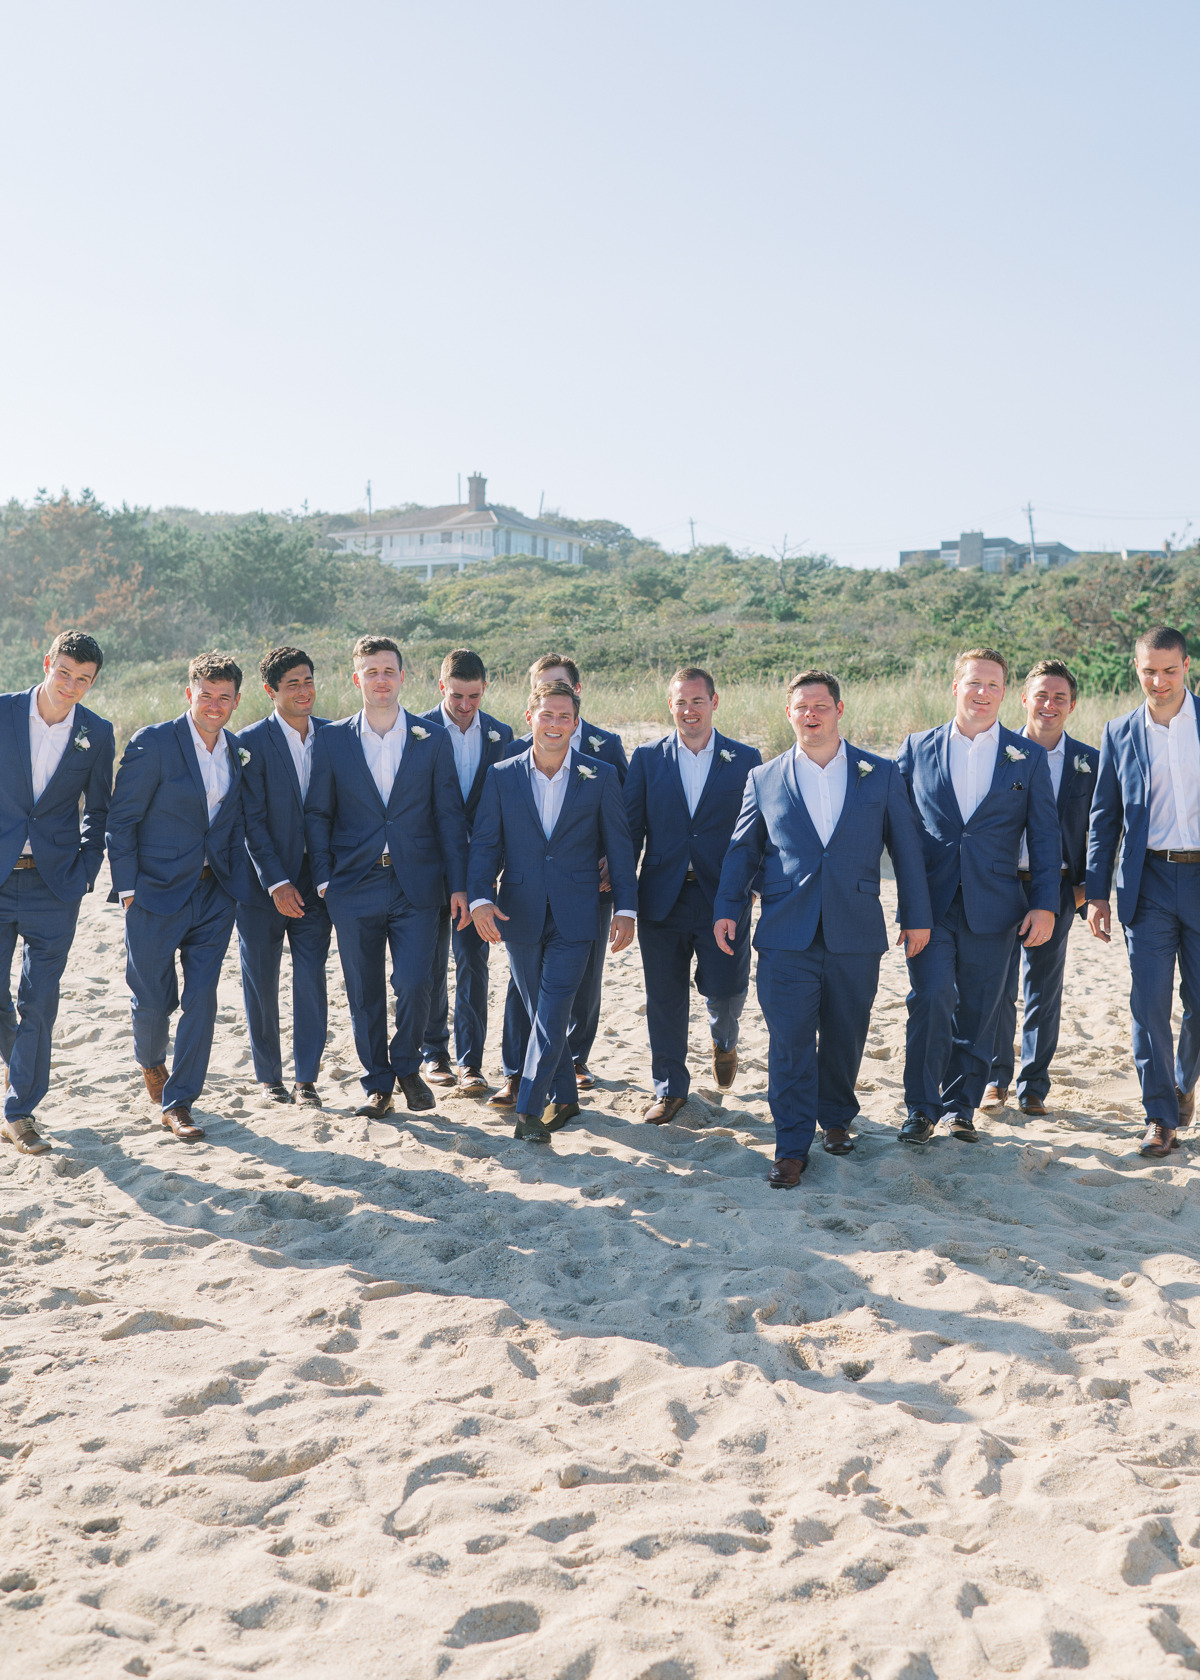 Groom and groomsmen walking in blue suits on beach